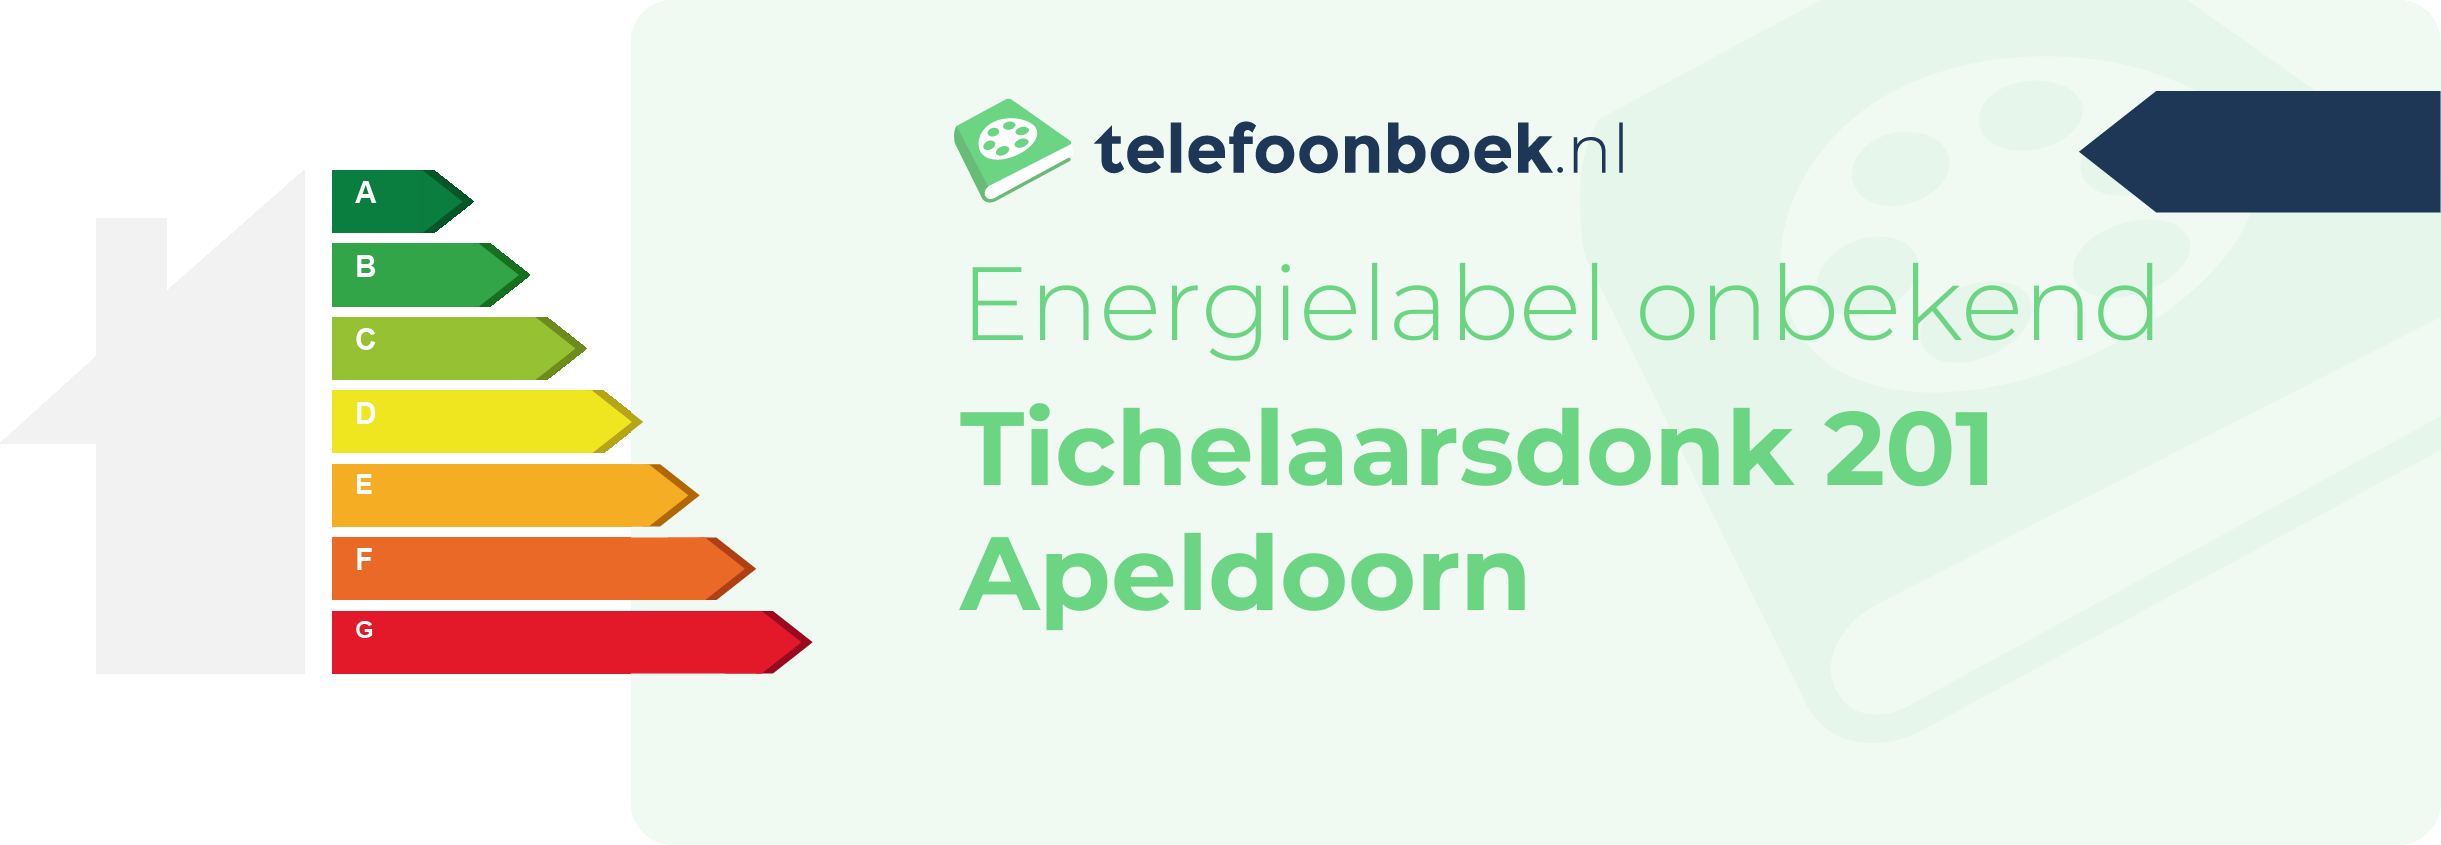 Energielabel Tichelaarsdonk 201 Apeldoorn